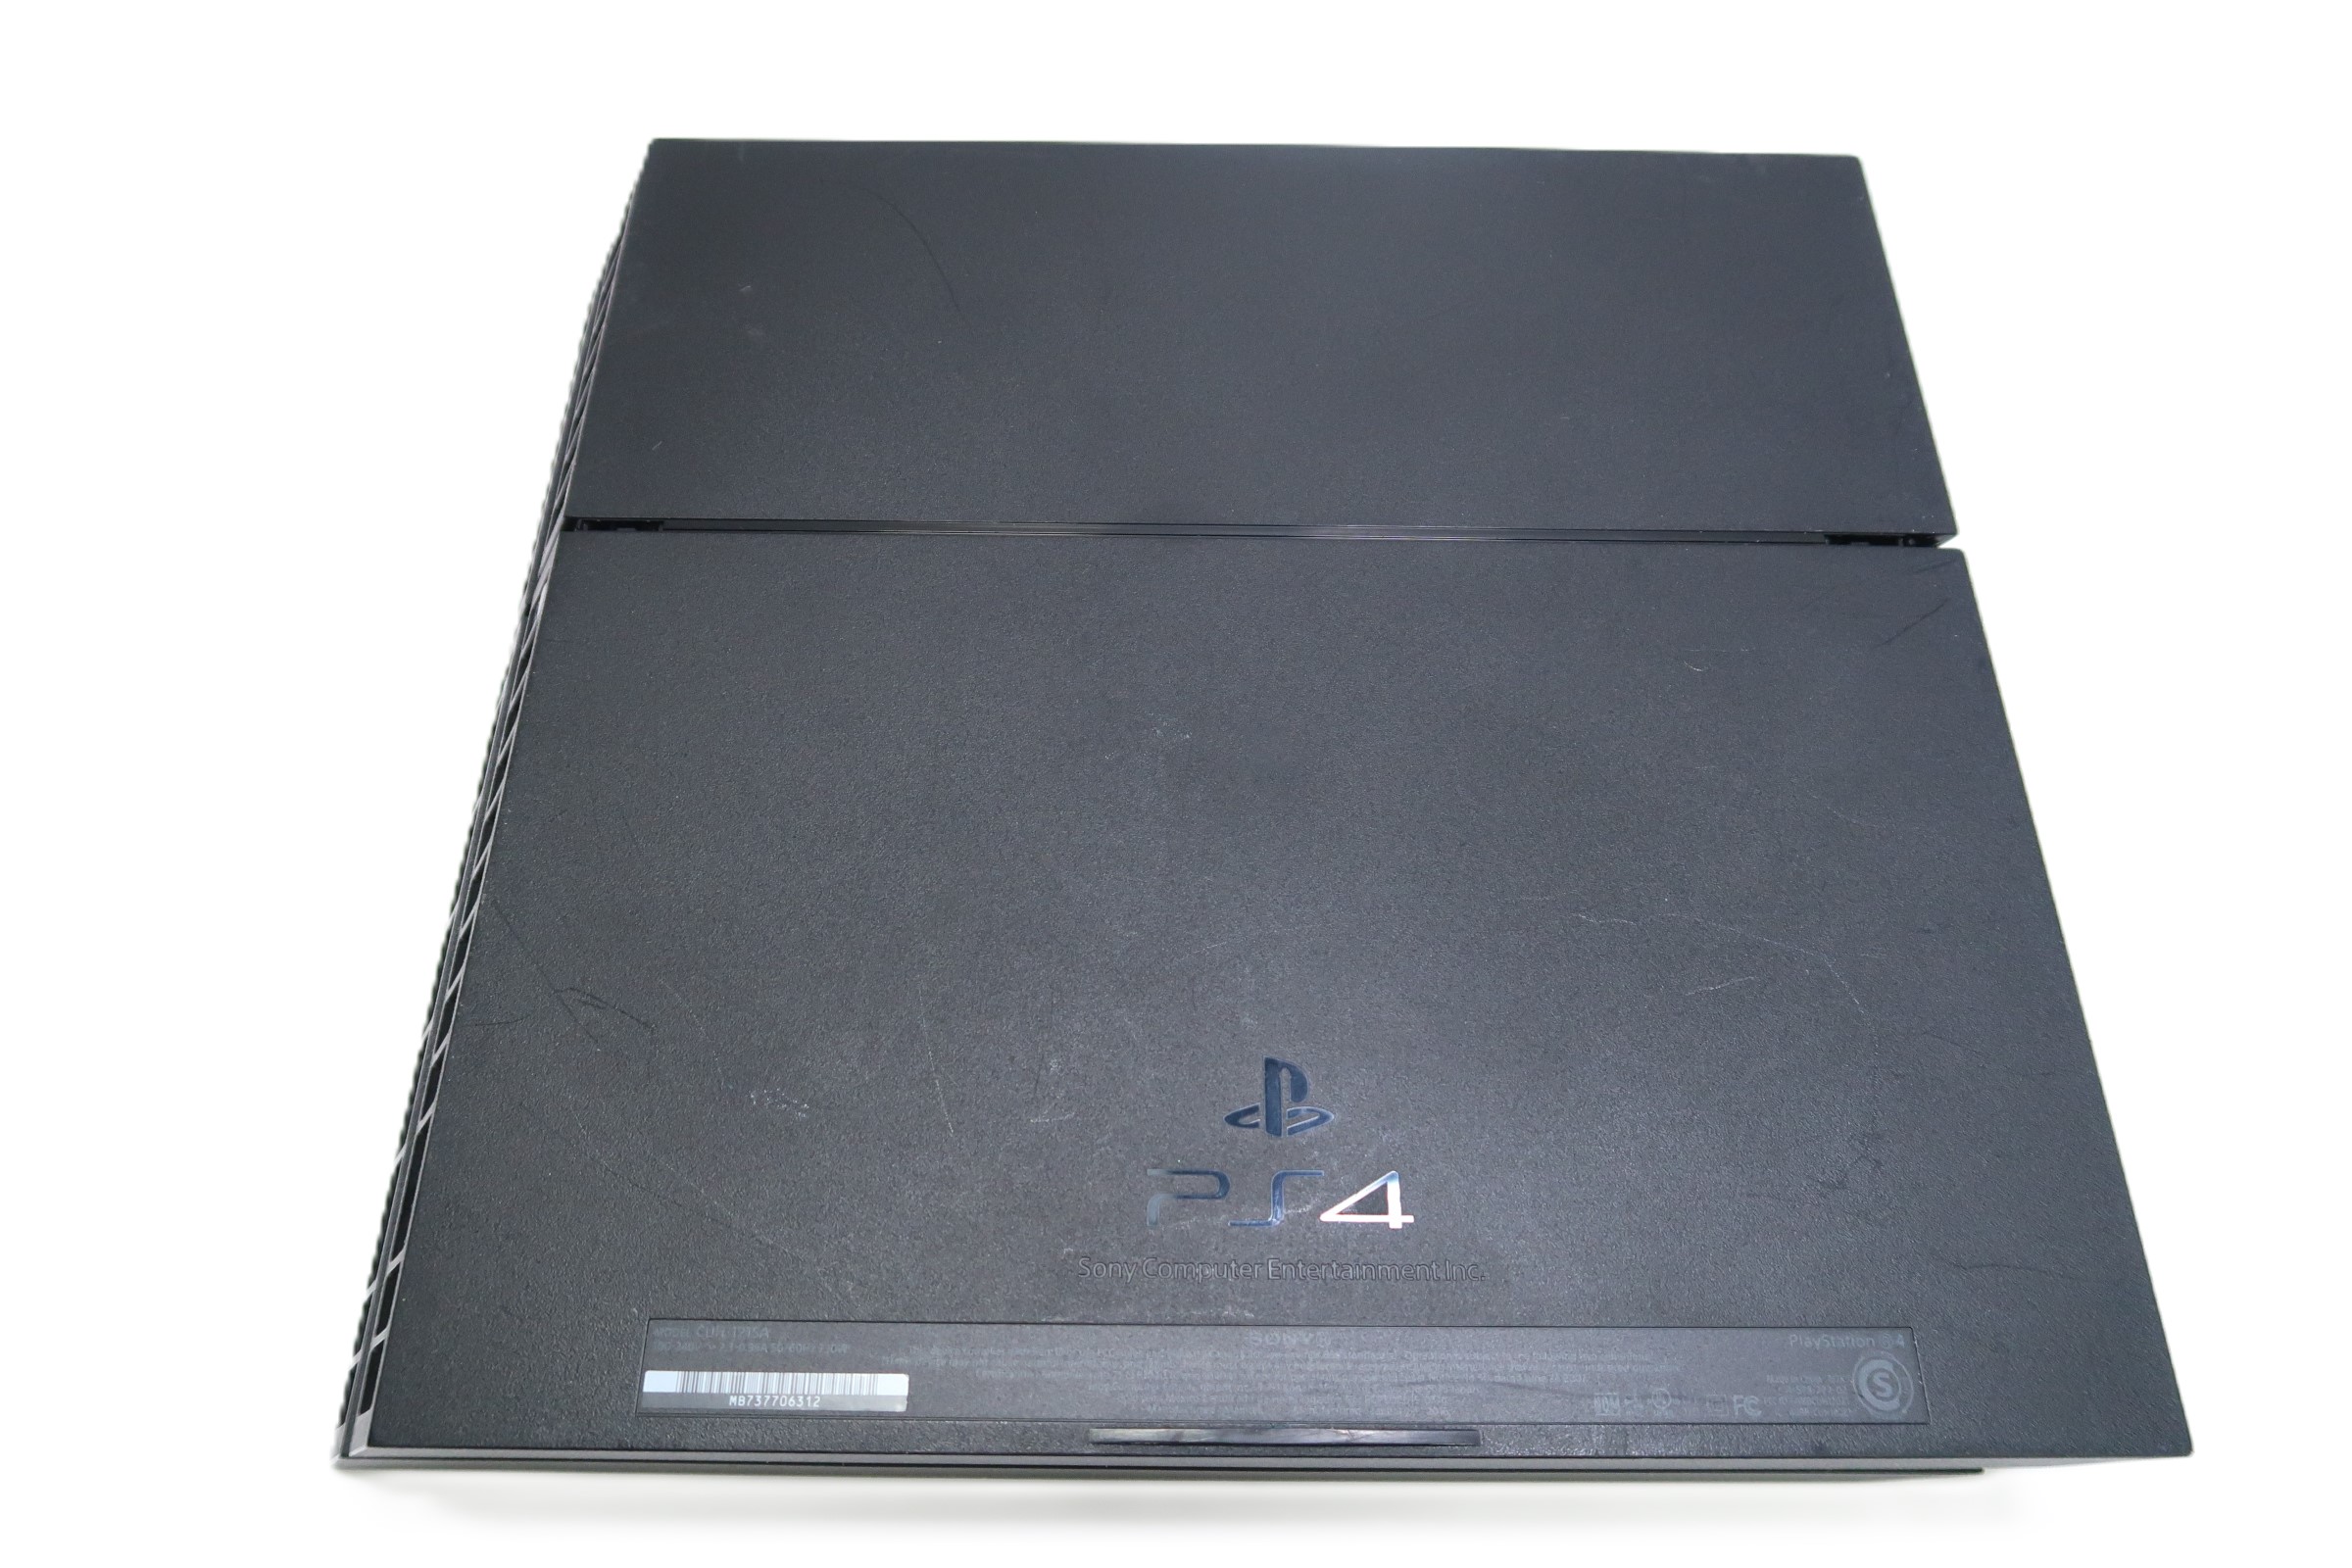 Consola PlayStation 4 1000035102 CUH-2000 Radioshack El Salvador